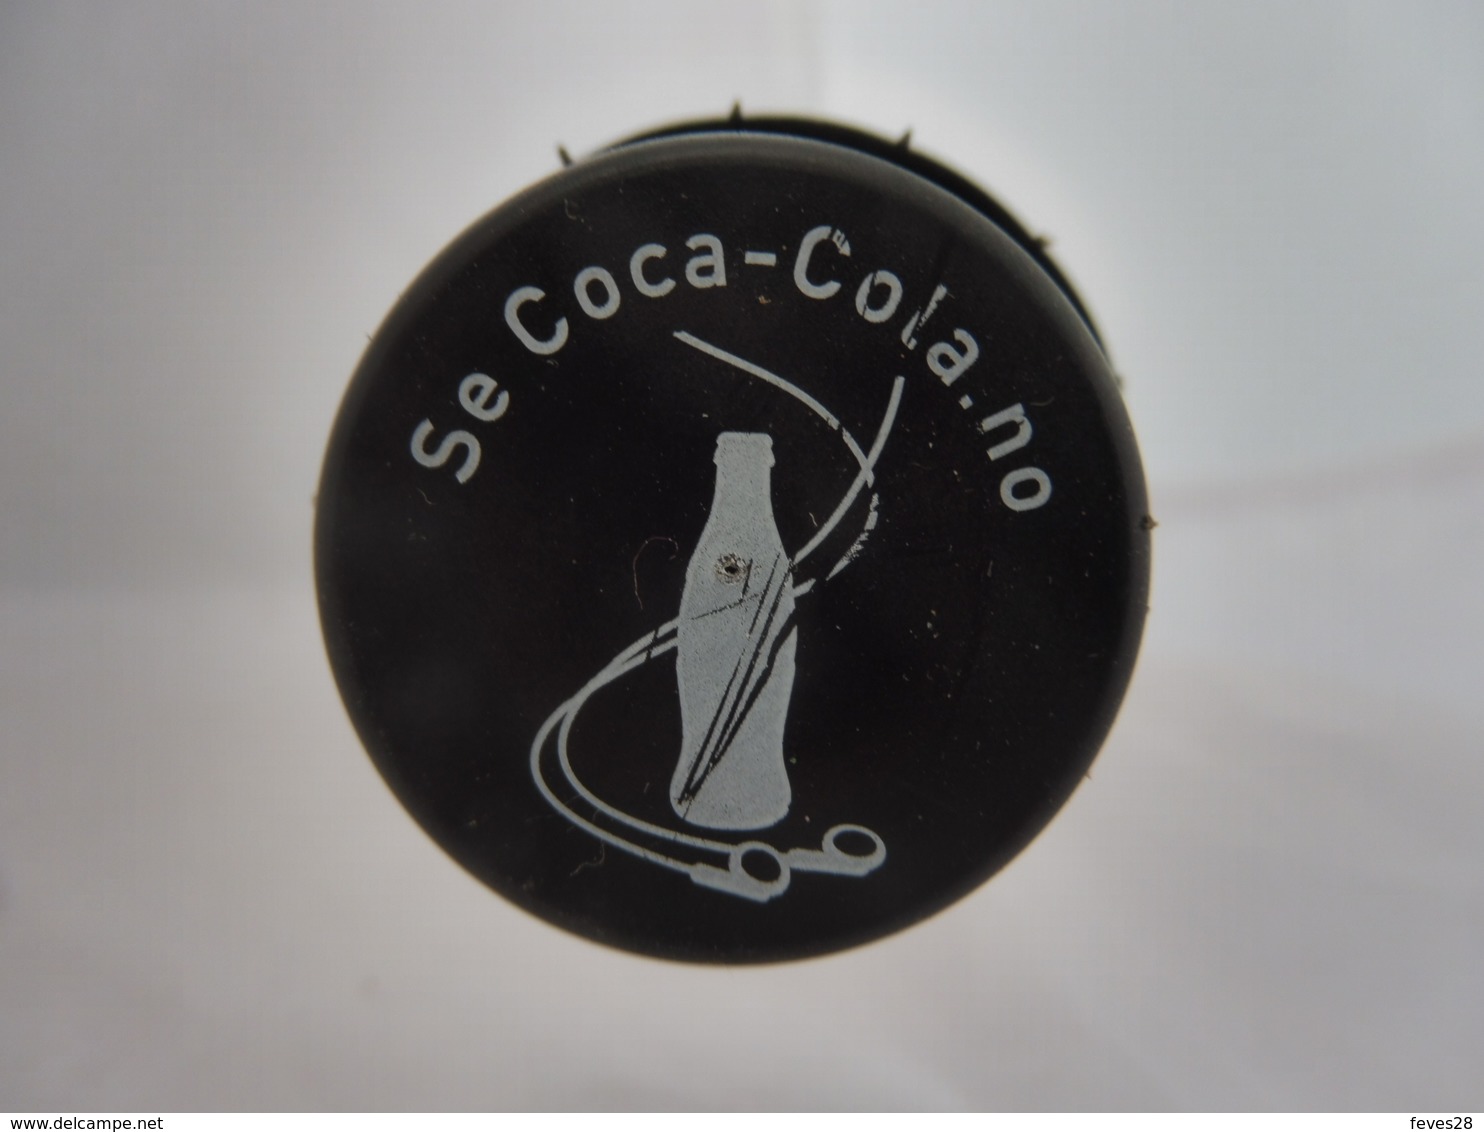 COCA COLA® ZERO BOUTEILLE PLASTIQUE VIDE 2007 NORVEGE 1.5L - Botellas